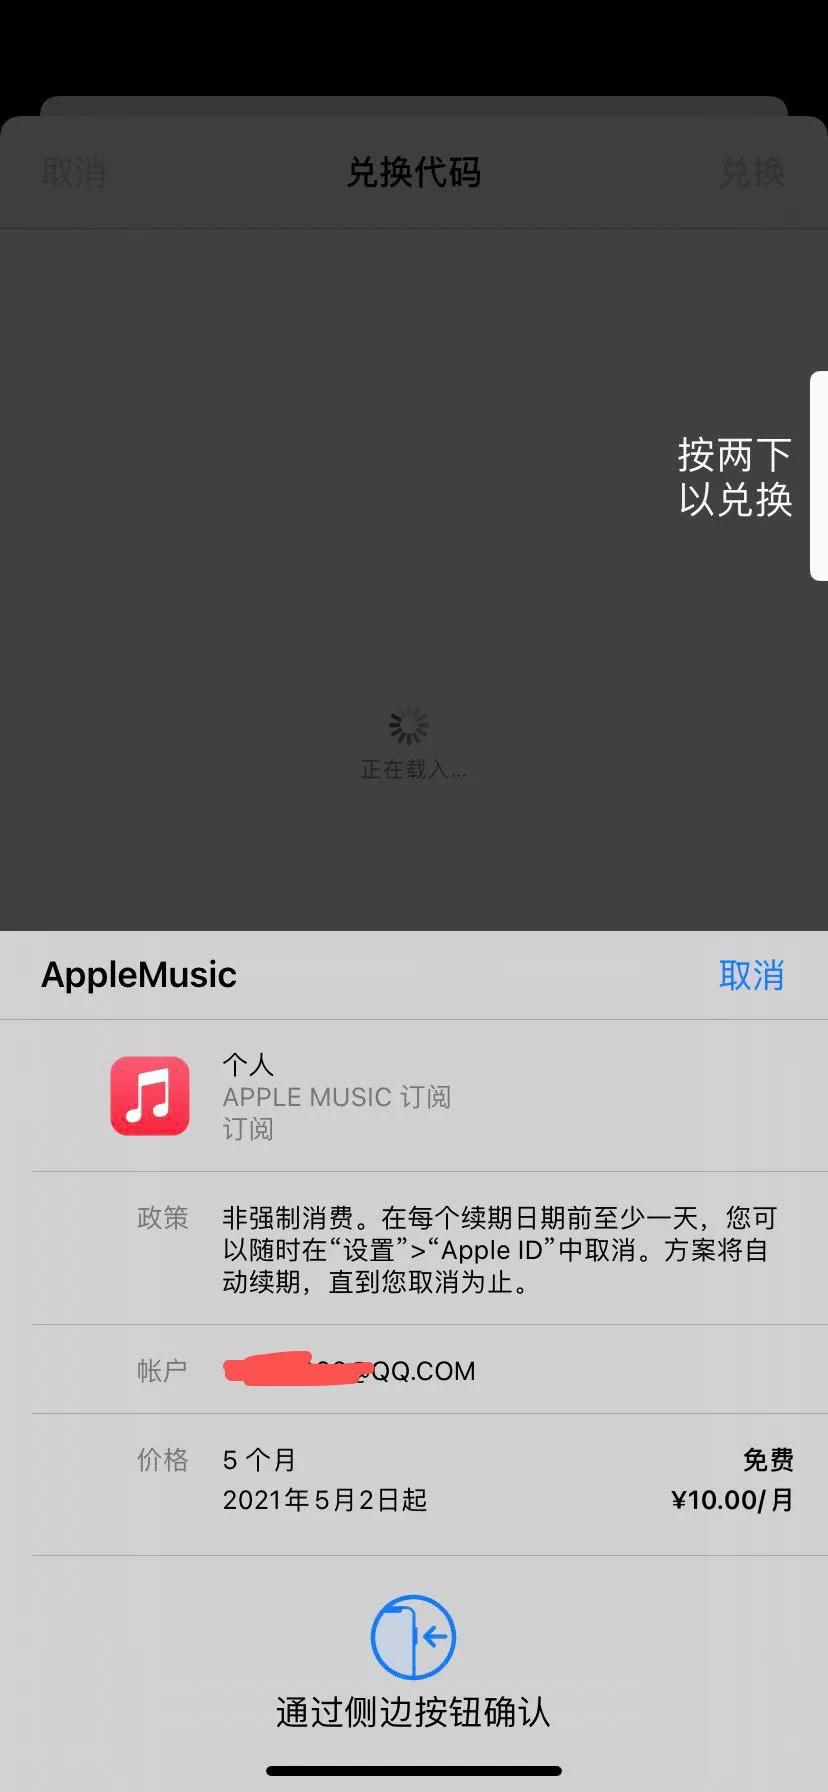 Apple Music音乐免费会员，老用户也能领取